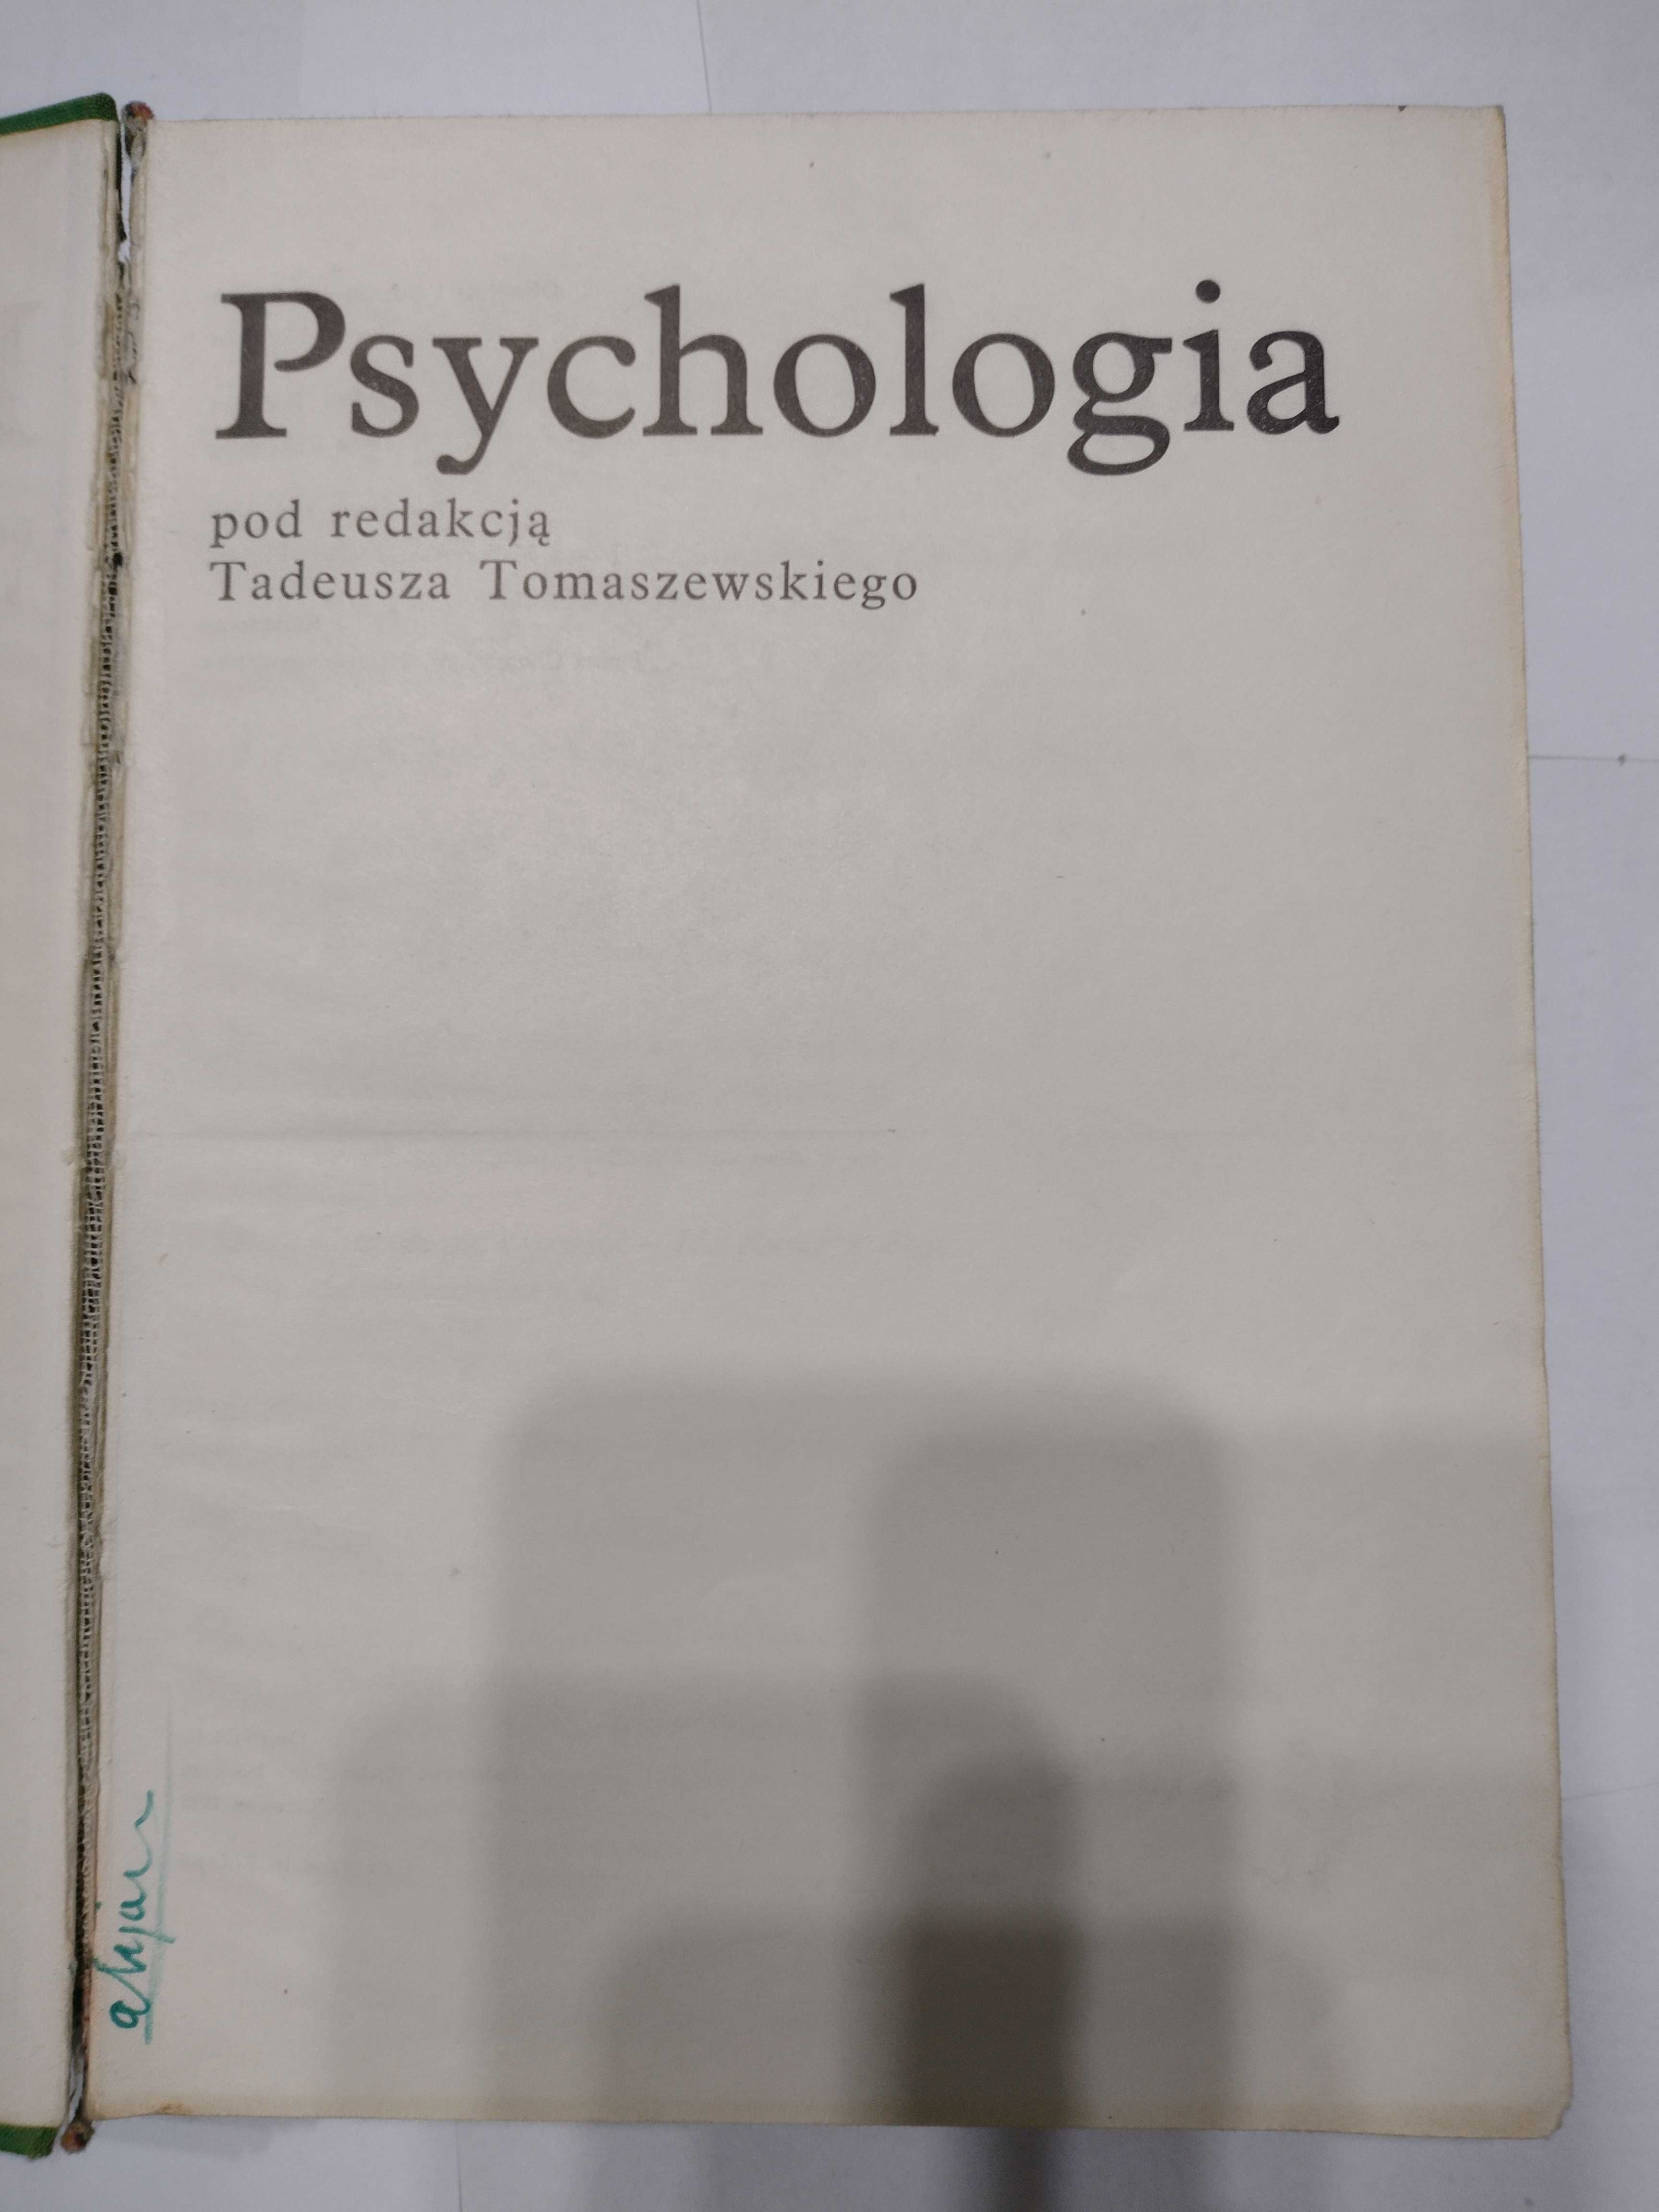 Książka "Psychologia", Tadeusz Tomaszewski